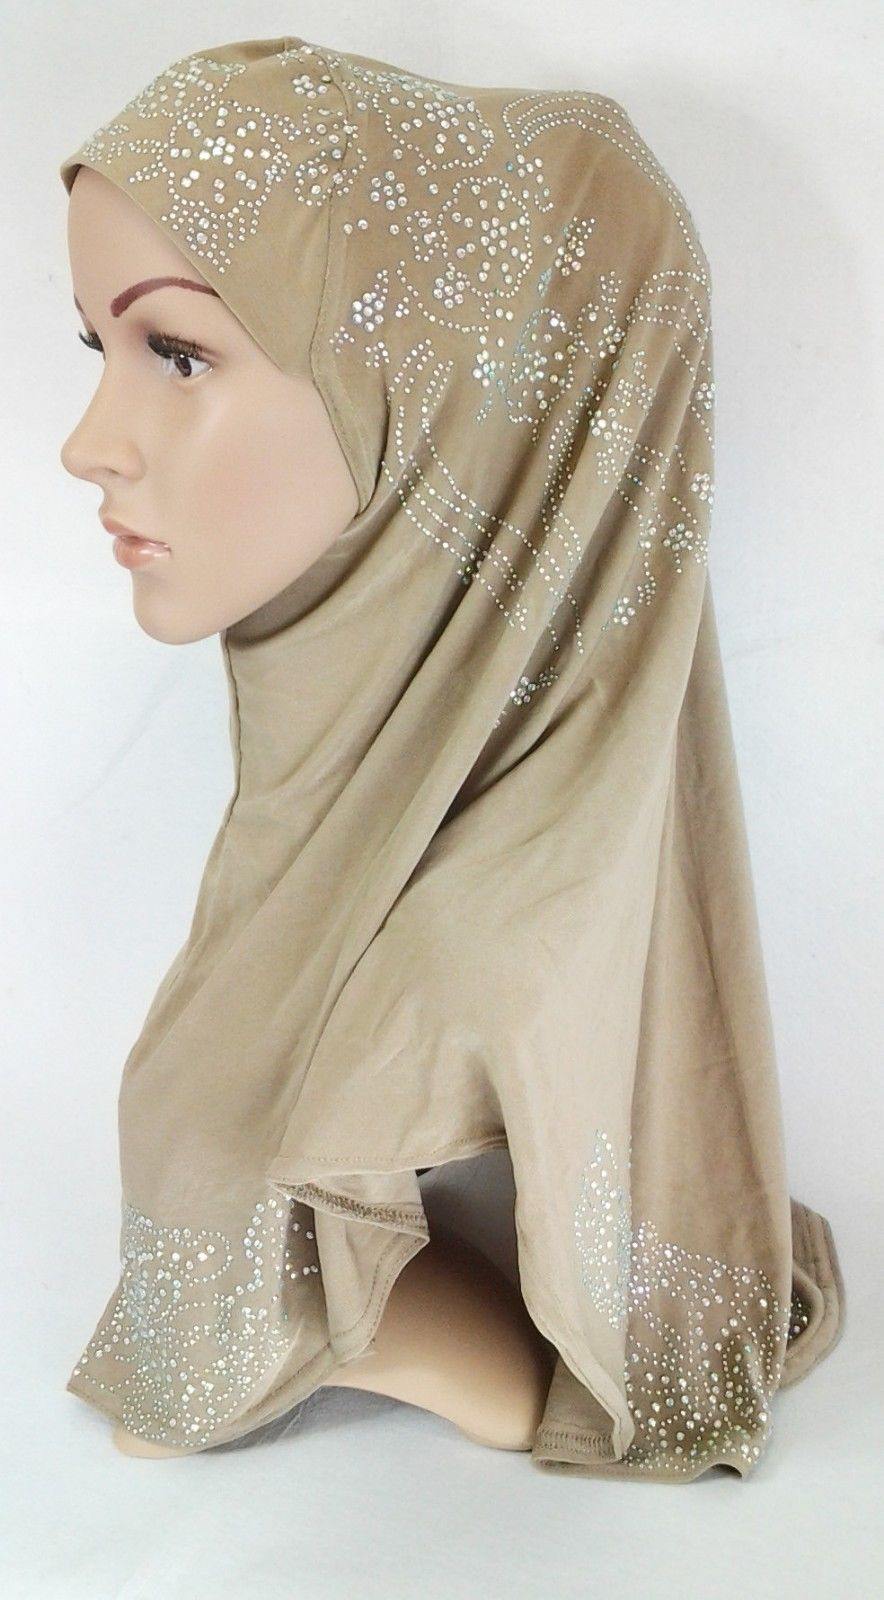 One-Piece Rhinestone Muslim Hijab Fashion Islamic Scarf Viscose CrystalHemp - Arabian Shopping Zone